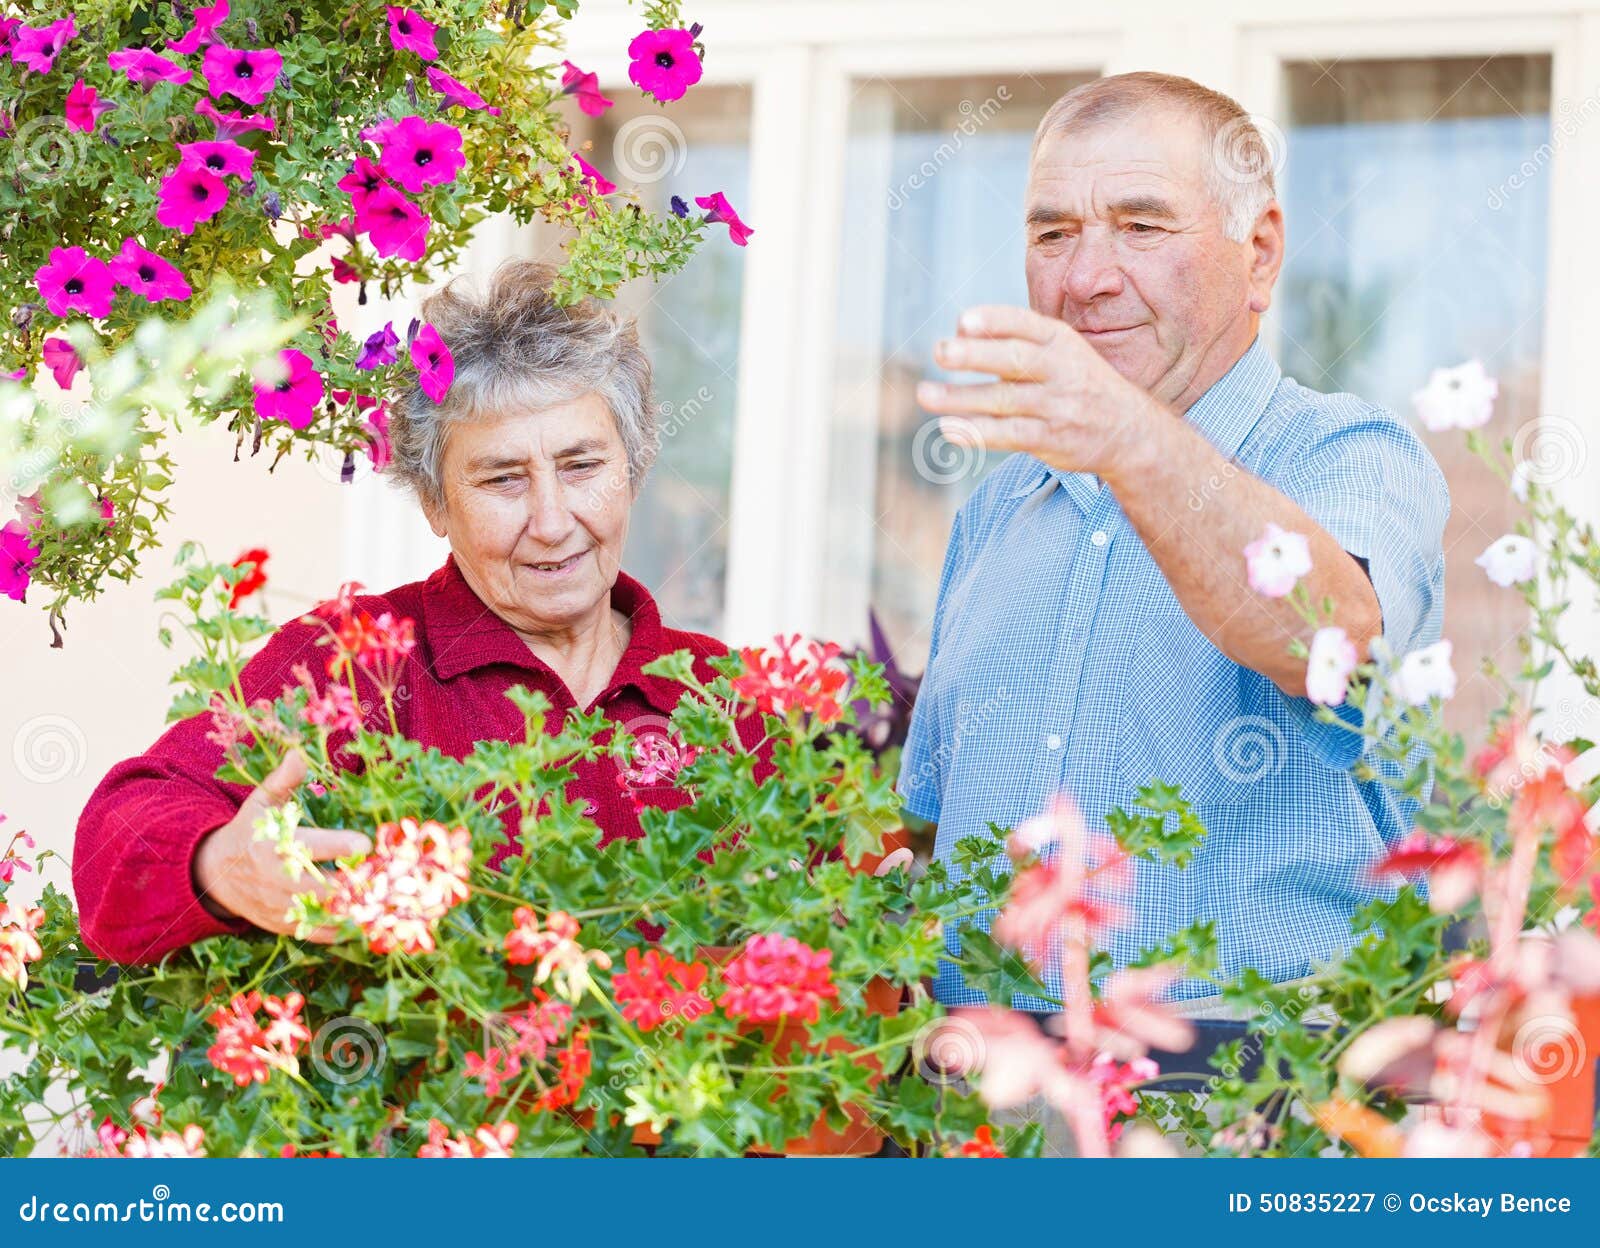 Elderly couple stock image. Image of leisure, couple - 50835227